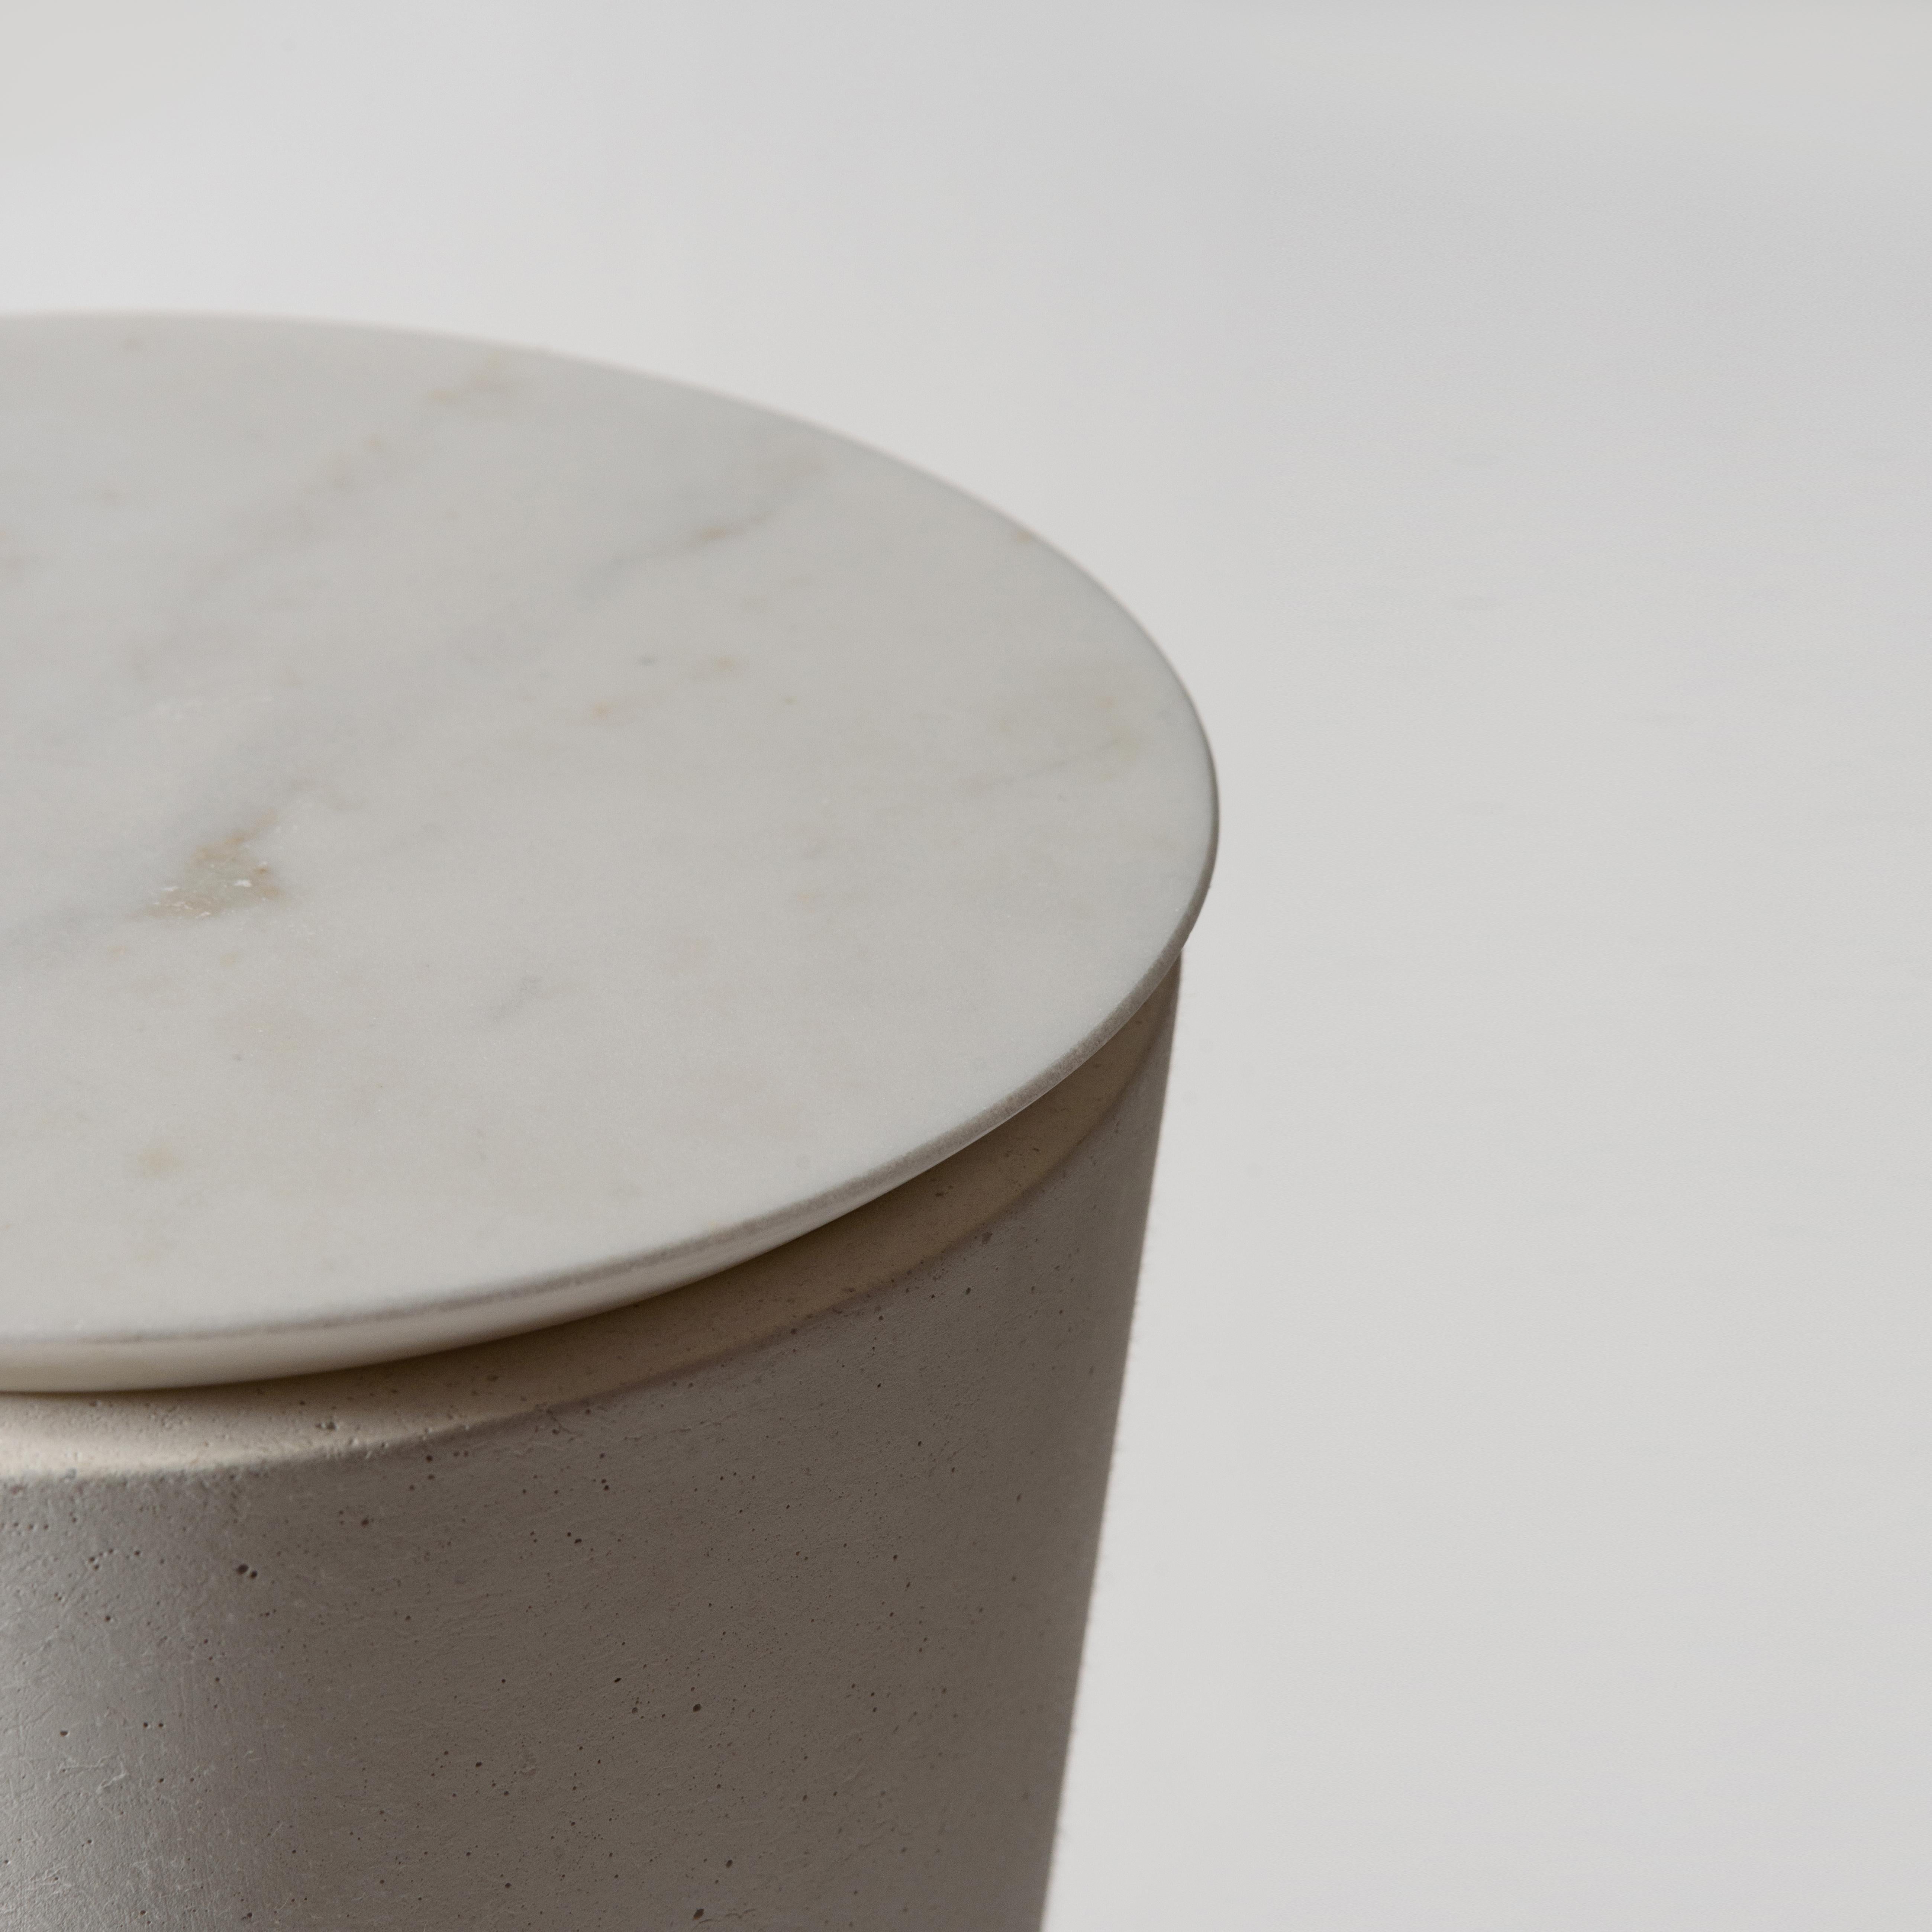 Europäisches 21. Jahrhundert skulpturale handgefertigte Beton, Marmor & Stein 'PLINTH MARBLE' Tisch in Weiß Handmade by ALENTES.

Der PLINTH MARBLE Beistelltisch ist sowohl skulptural als auch funktional, ein freundlicher eklektischer Touch in jedem